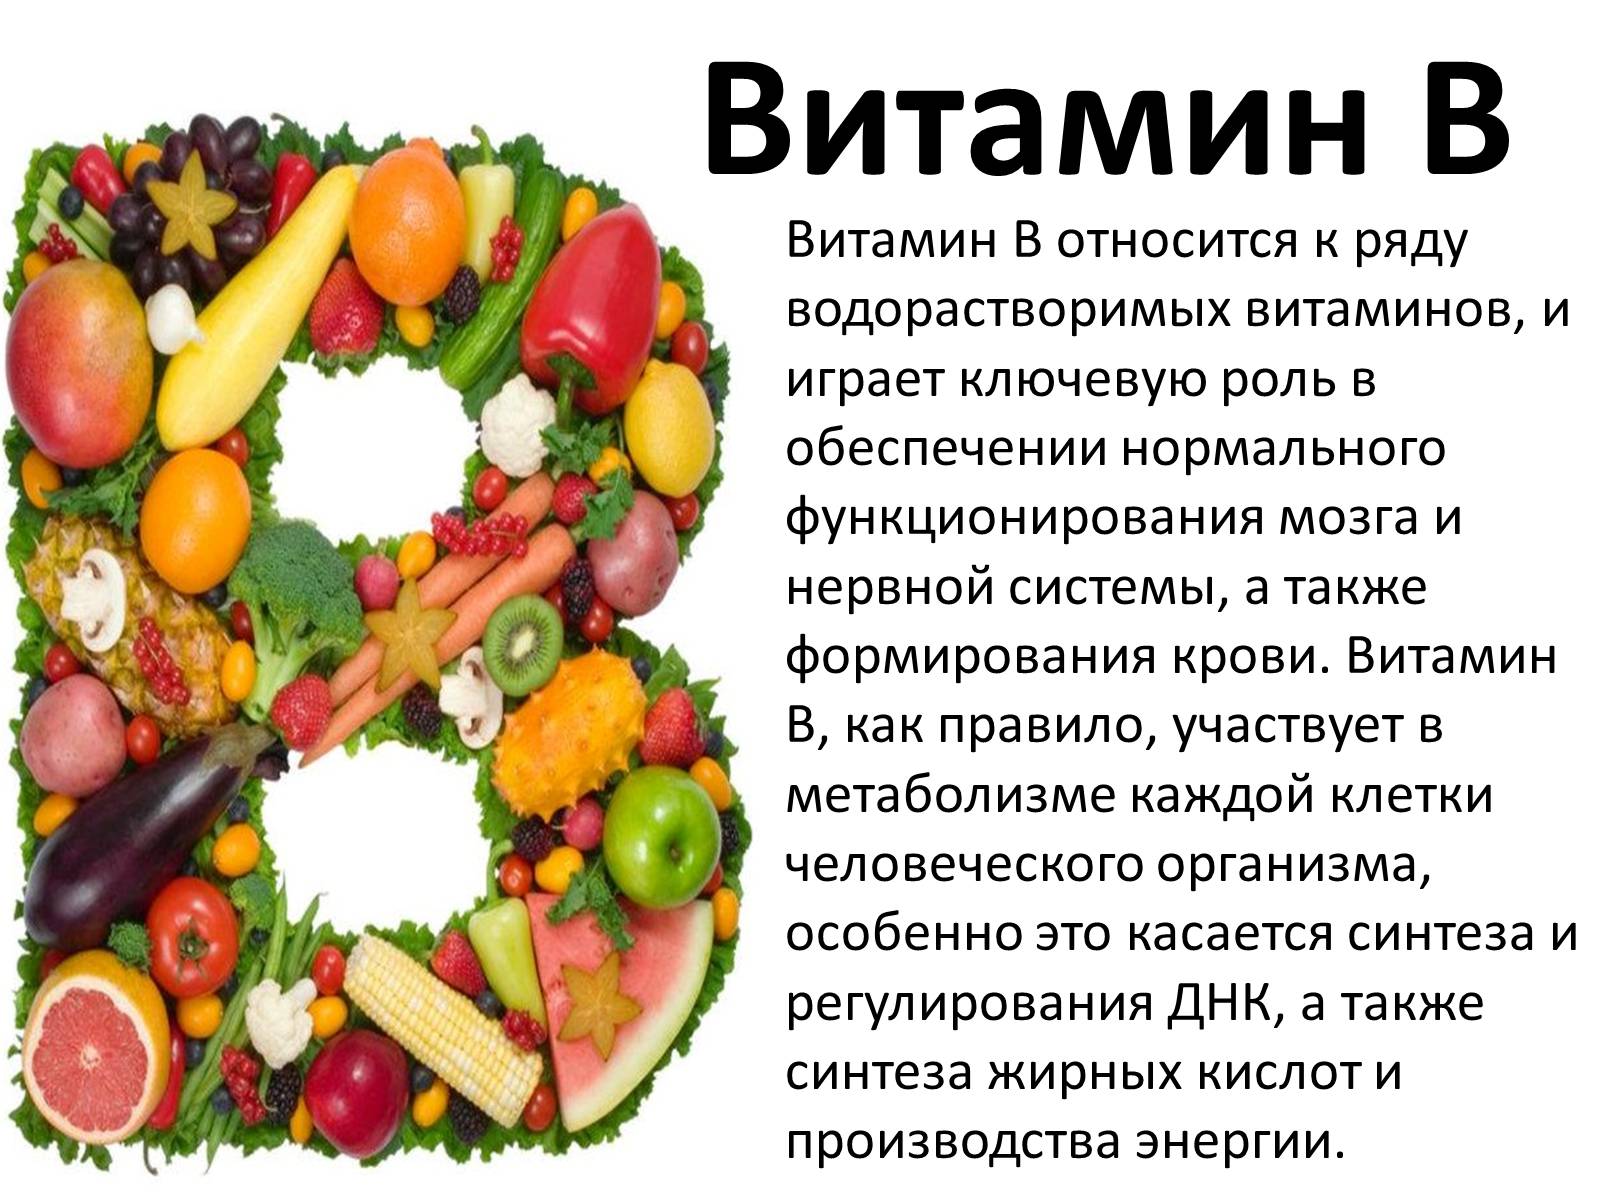 Назначение витамина б. Сообщение о витаминах. Презентация на тему витамины. Доклад про витамины. Краткая информация о витаминах.